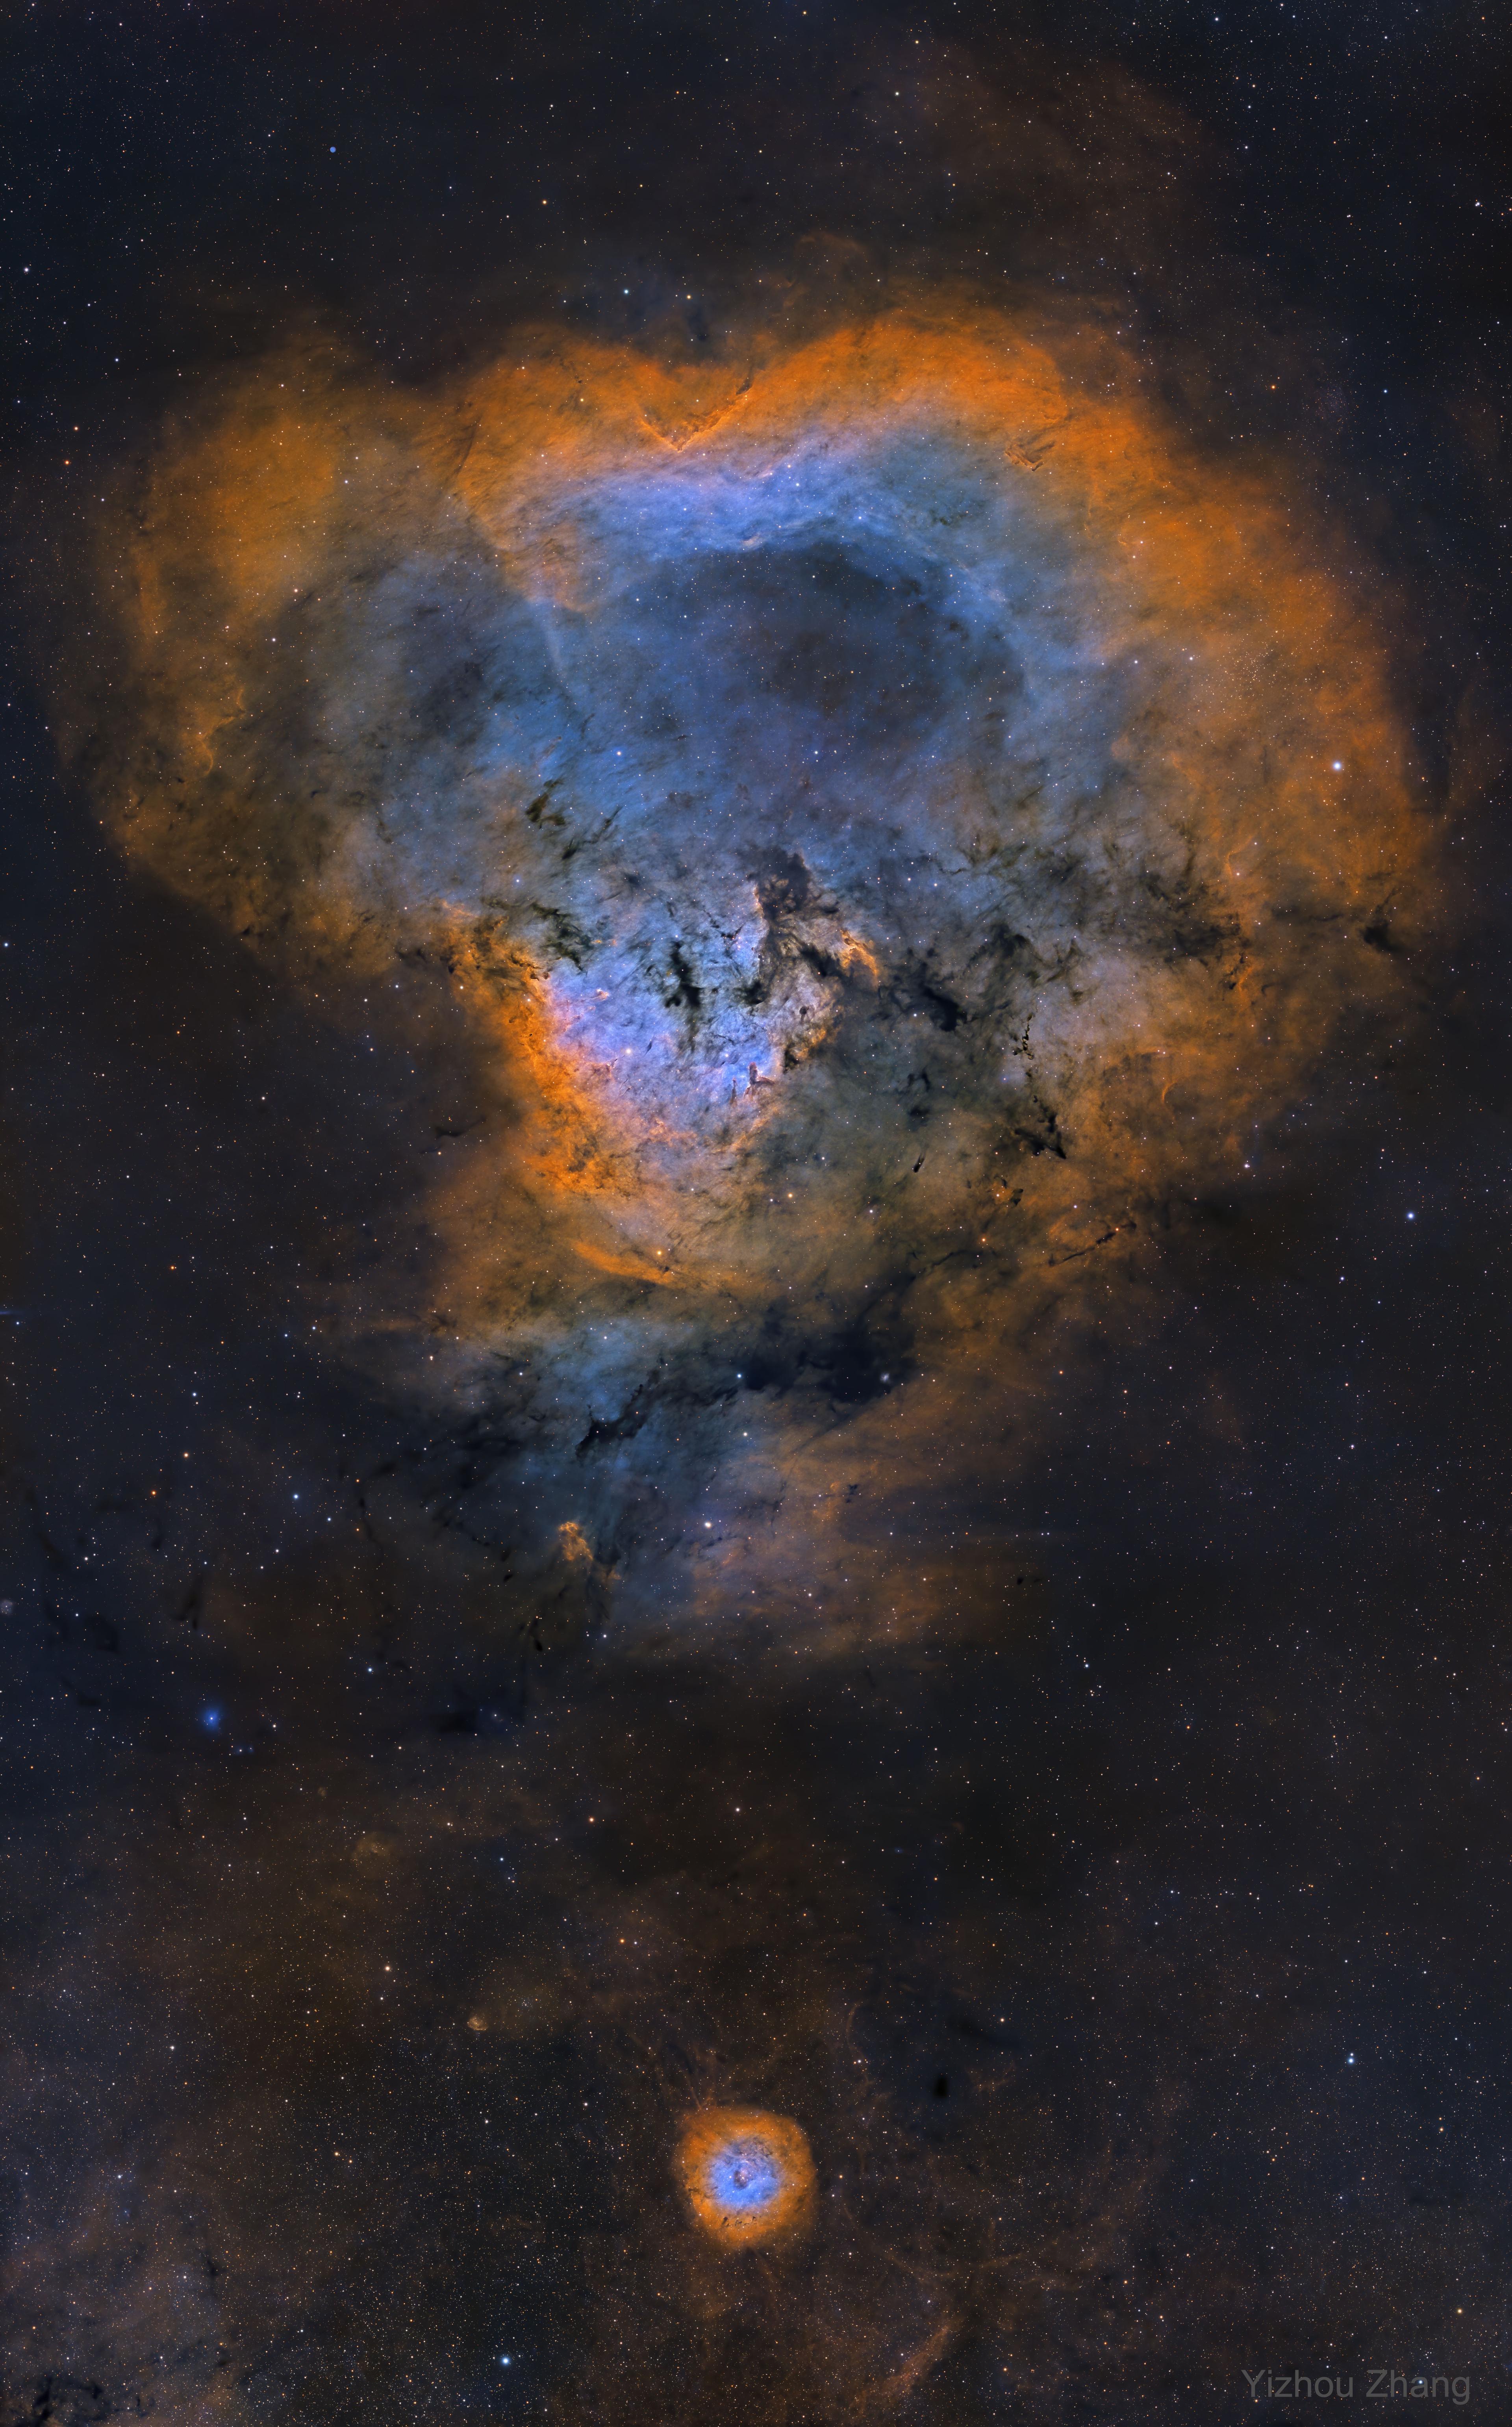 سديم إن‌جي‌سي 7822 المعروف بسديم علامة الاستفهام الكونيّة بسبب شكله الذي يشبهها. أنشئت الصورة وفق لوح ألوان هَبل بالأزرق والأخضر والأحمر.